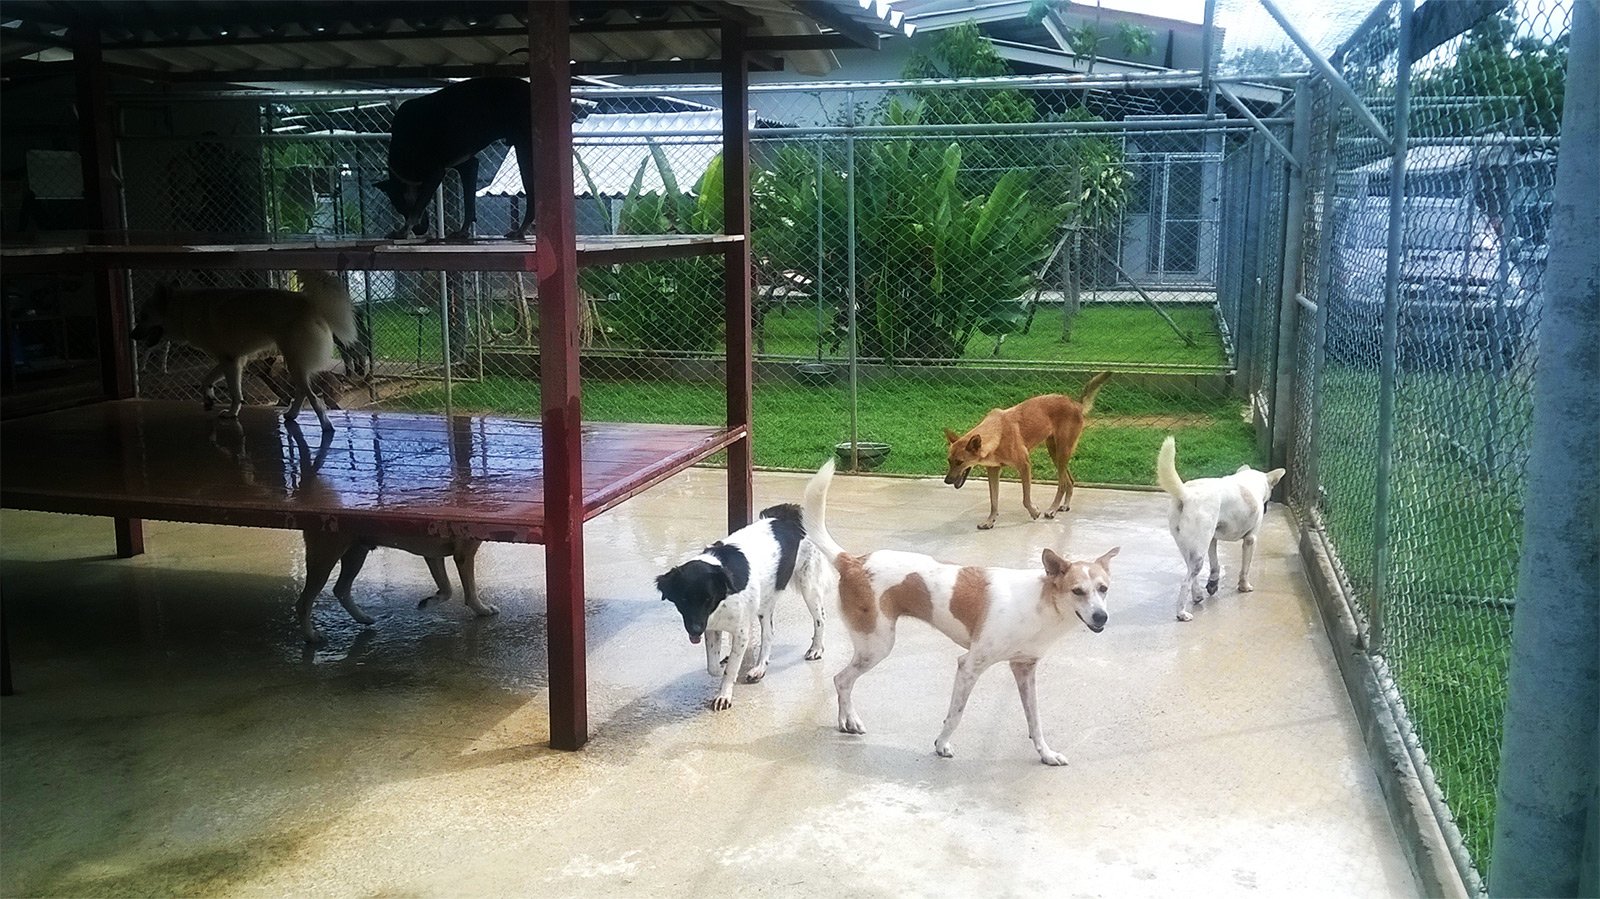 Soi Dog Foundation, Phuket